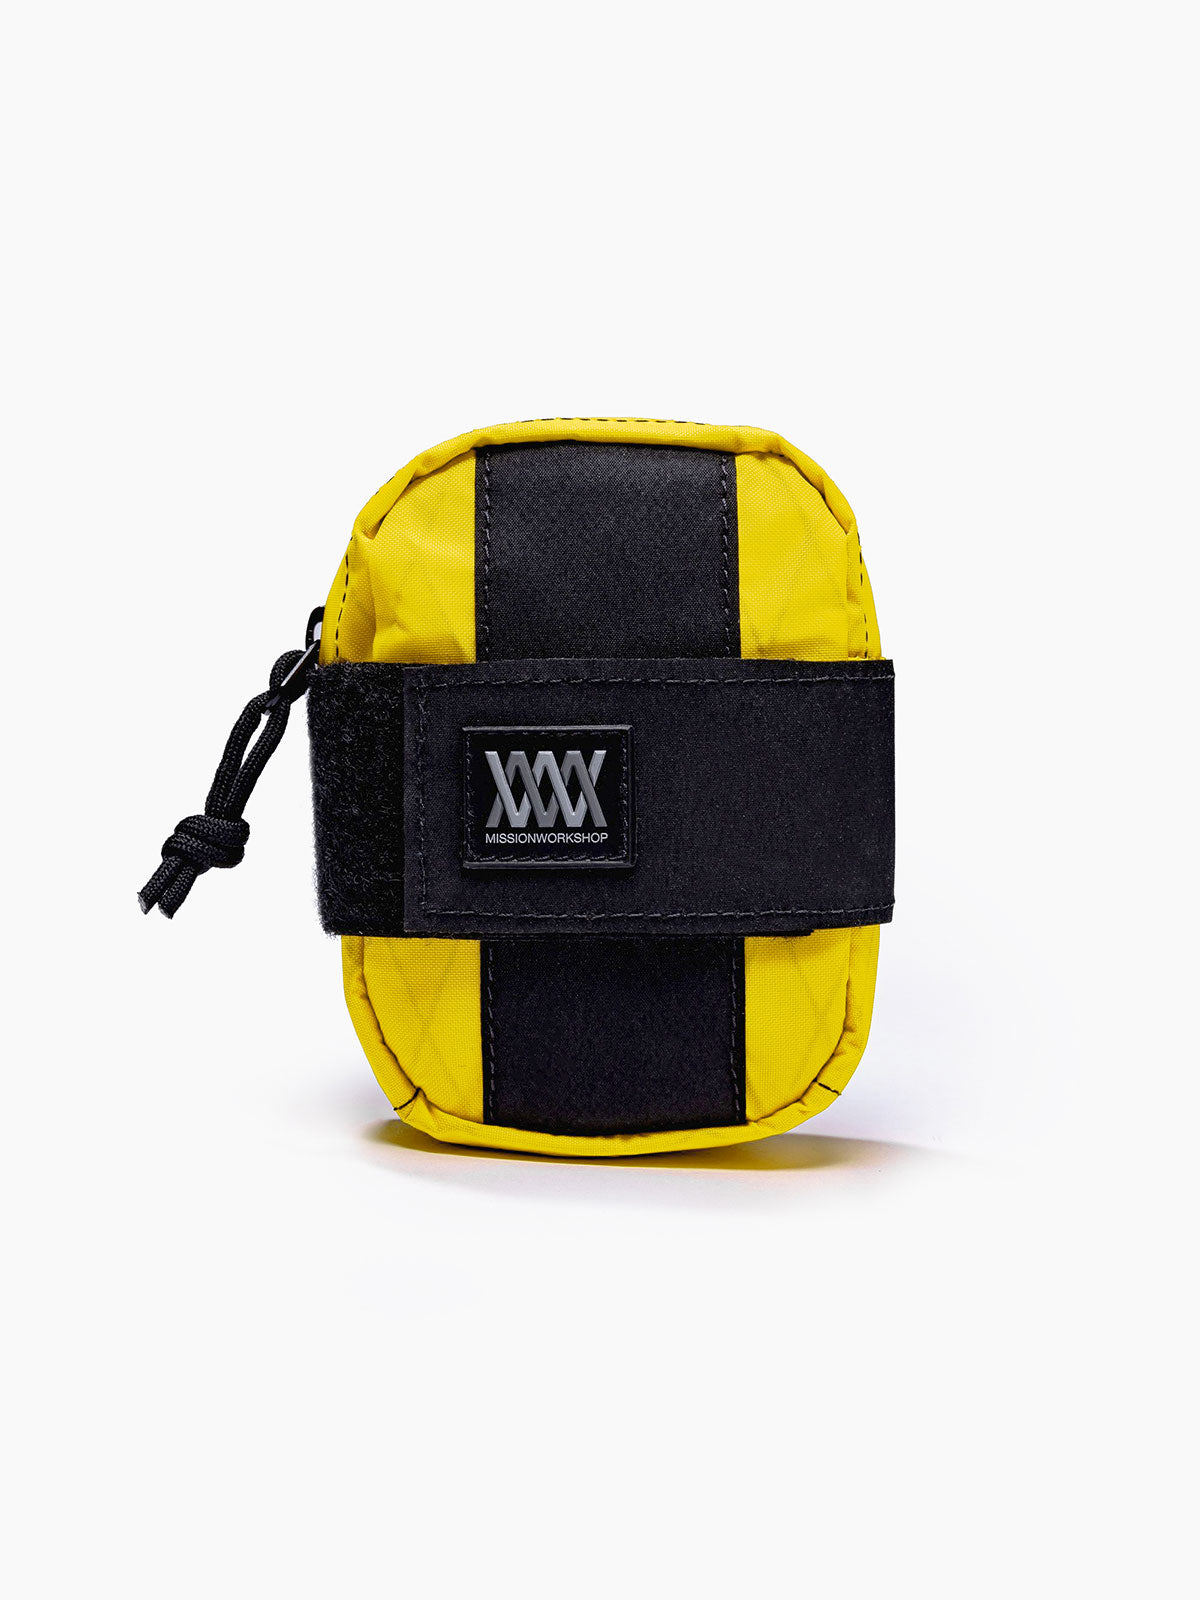 Mission Saddle Bag von Mission Workshop - Wetterfeste Taschen und technische Bekleidung - San Francisco & Los Angeles - Für die Ewigkeit gebaut - Garantiert